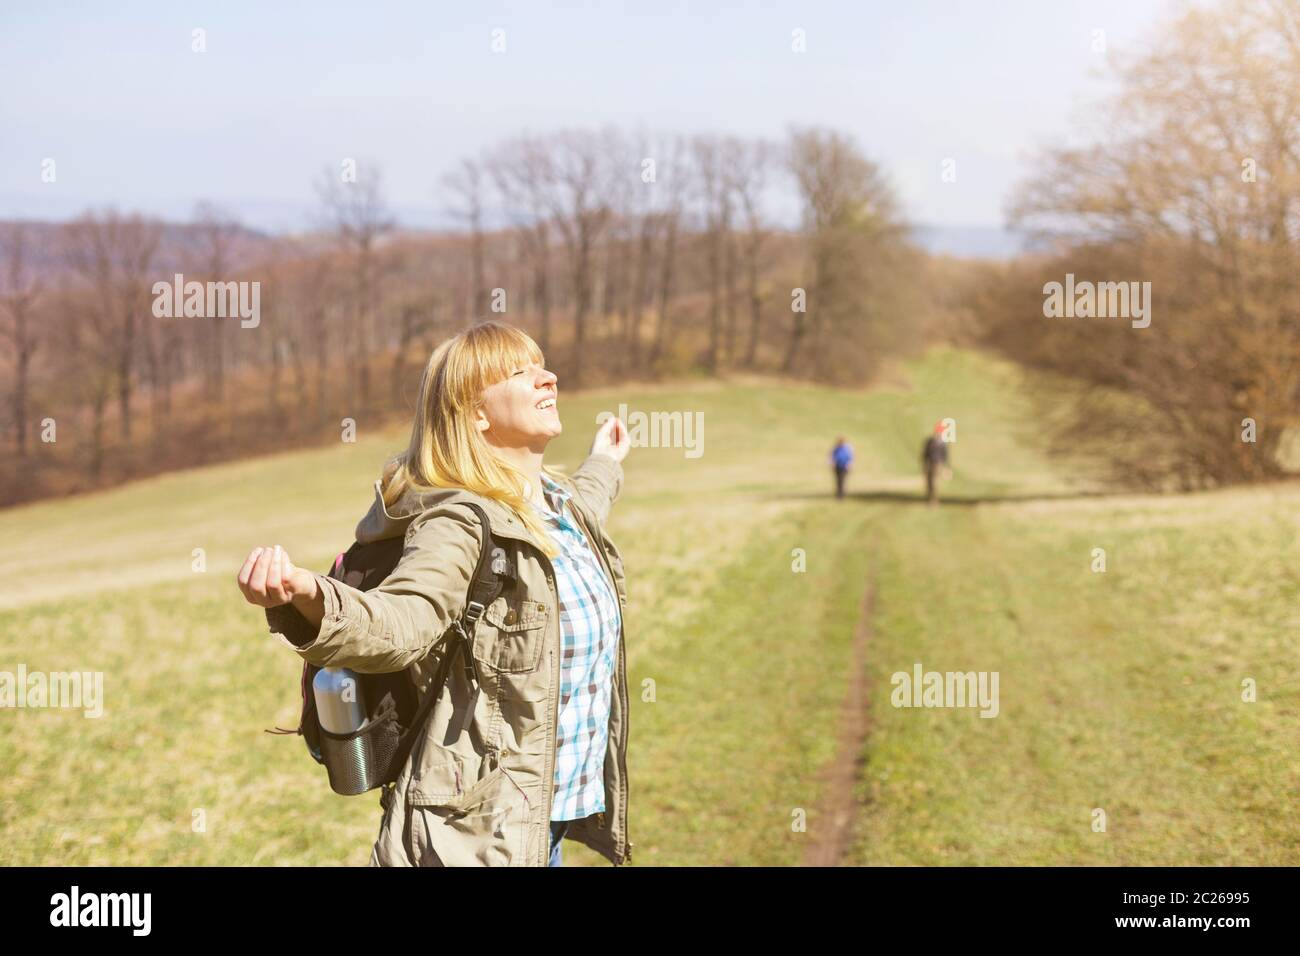 Femme est randonnée et trekking dehors sur une colline. Tourisme, vacances et activité physique concept. Banque D'Images